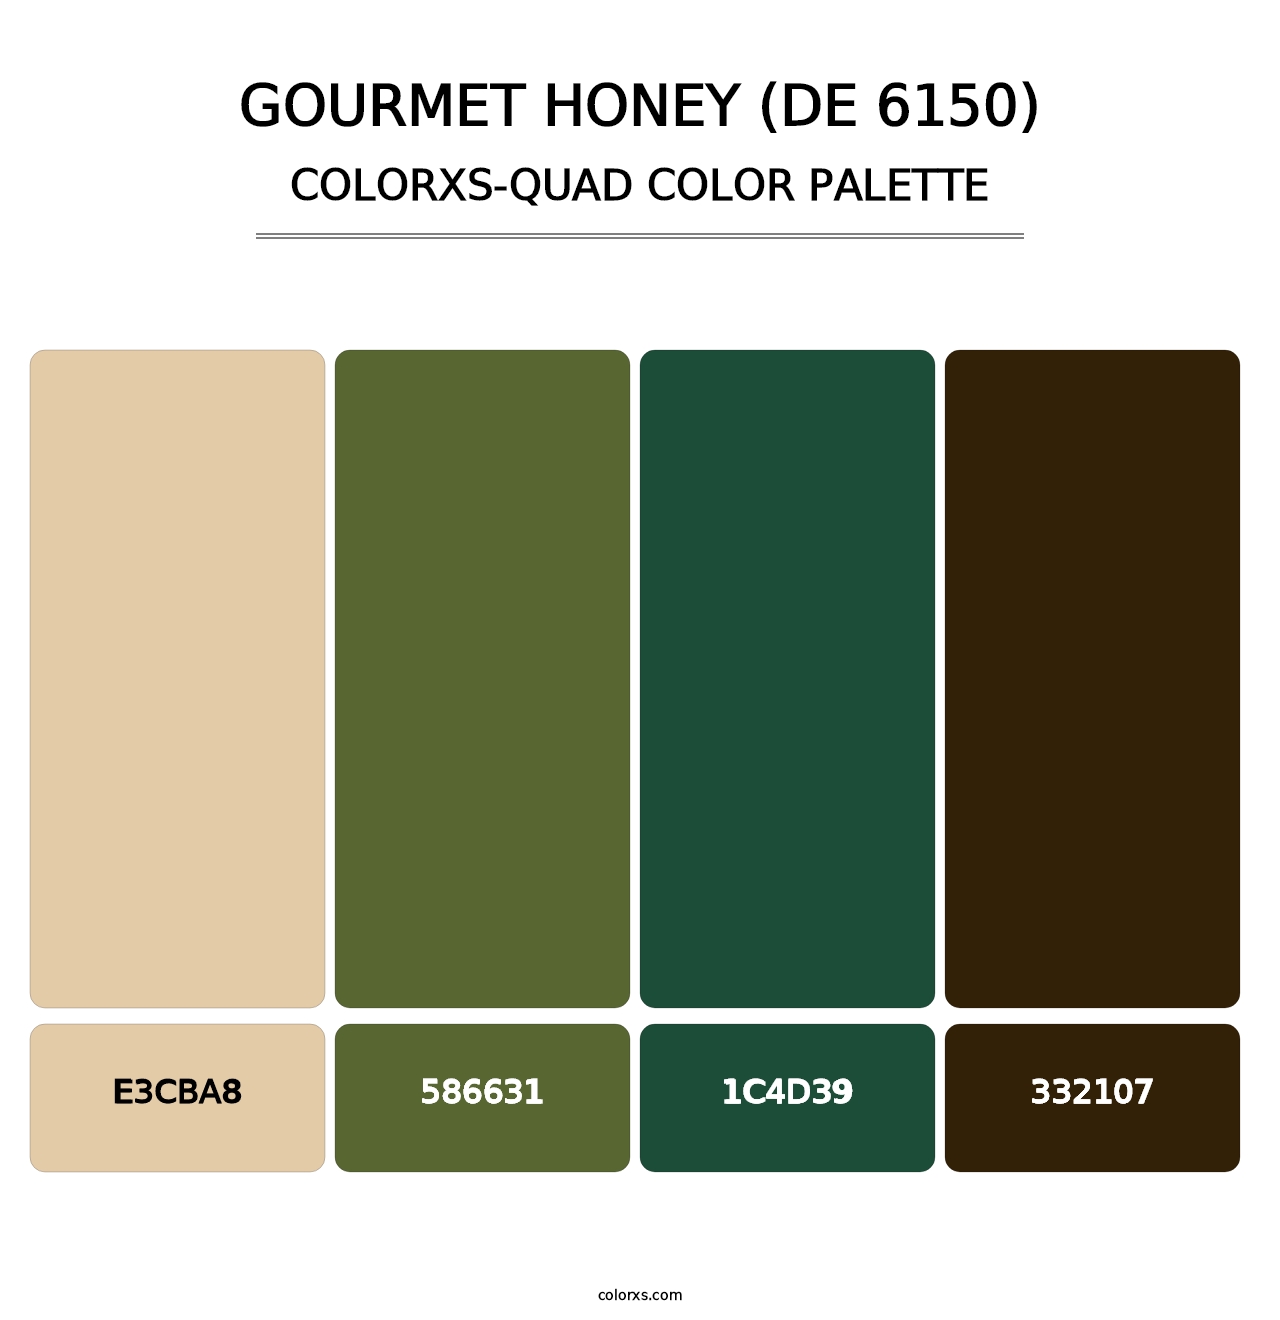 Gourmet Honey (DE 6150) - Colorxs Quad Palette